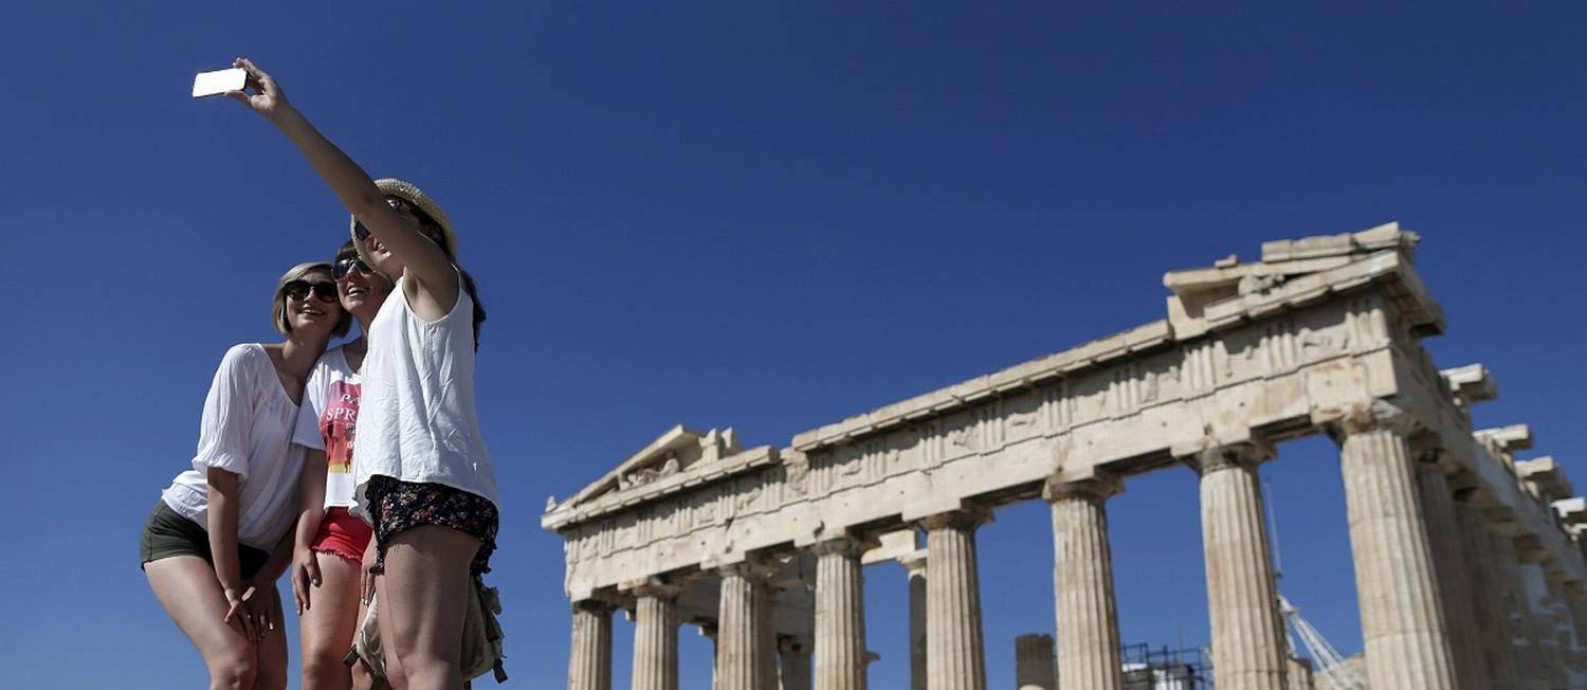 Grupo de turistas tira uma selfie em frente ao Parthenon, em Atenas Foto: Christian Hartmann / Reuters